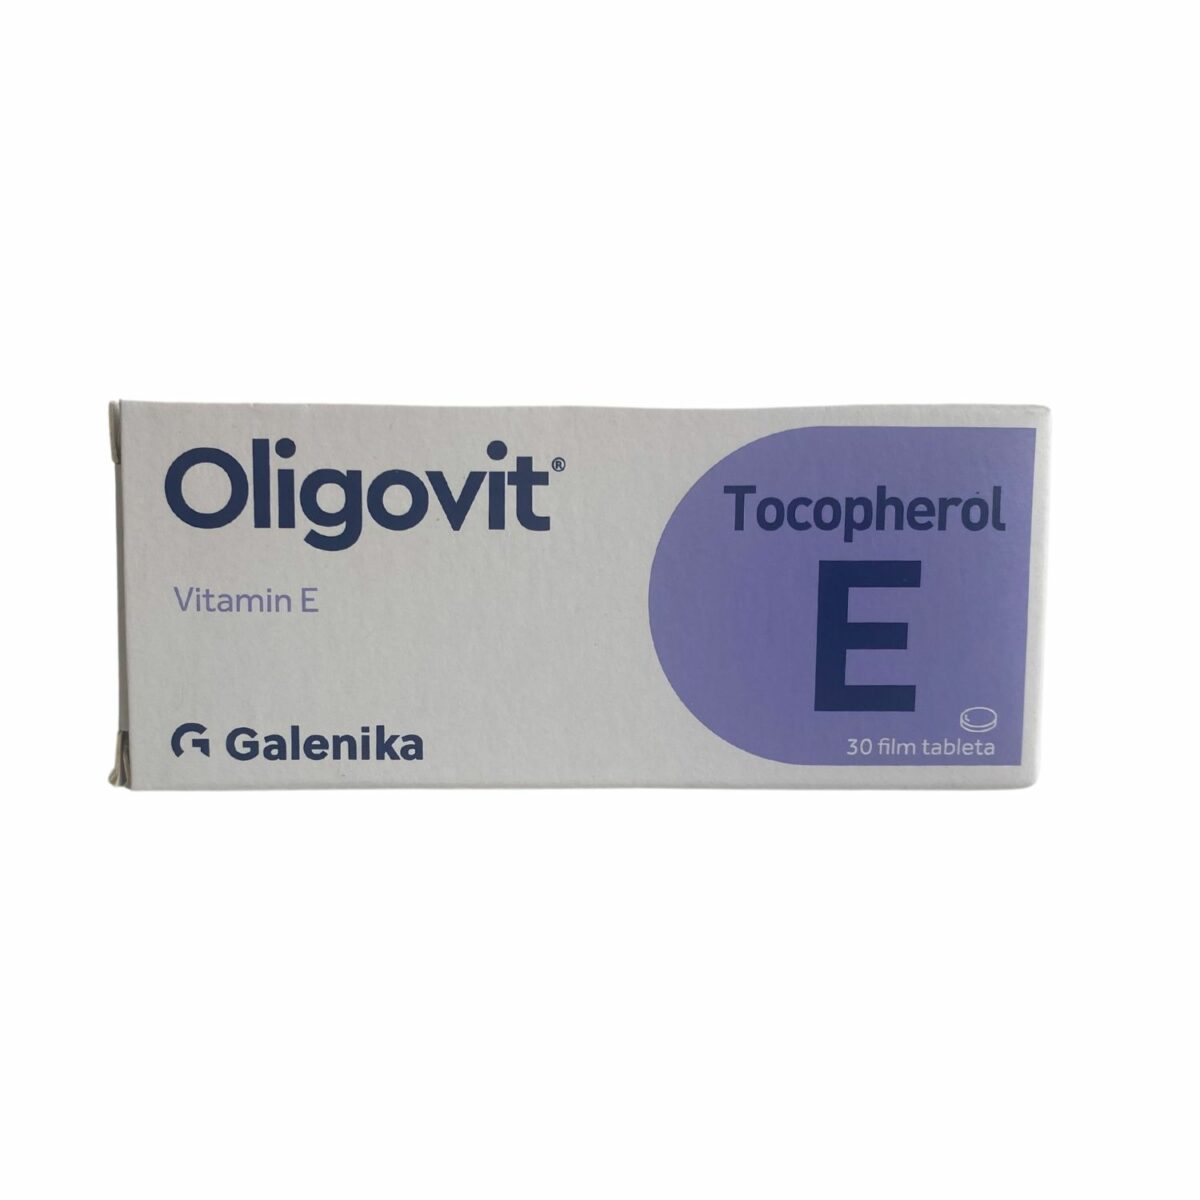 Oligovit Tocopherol 30 tableta